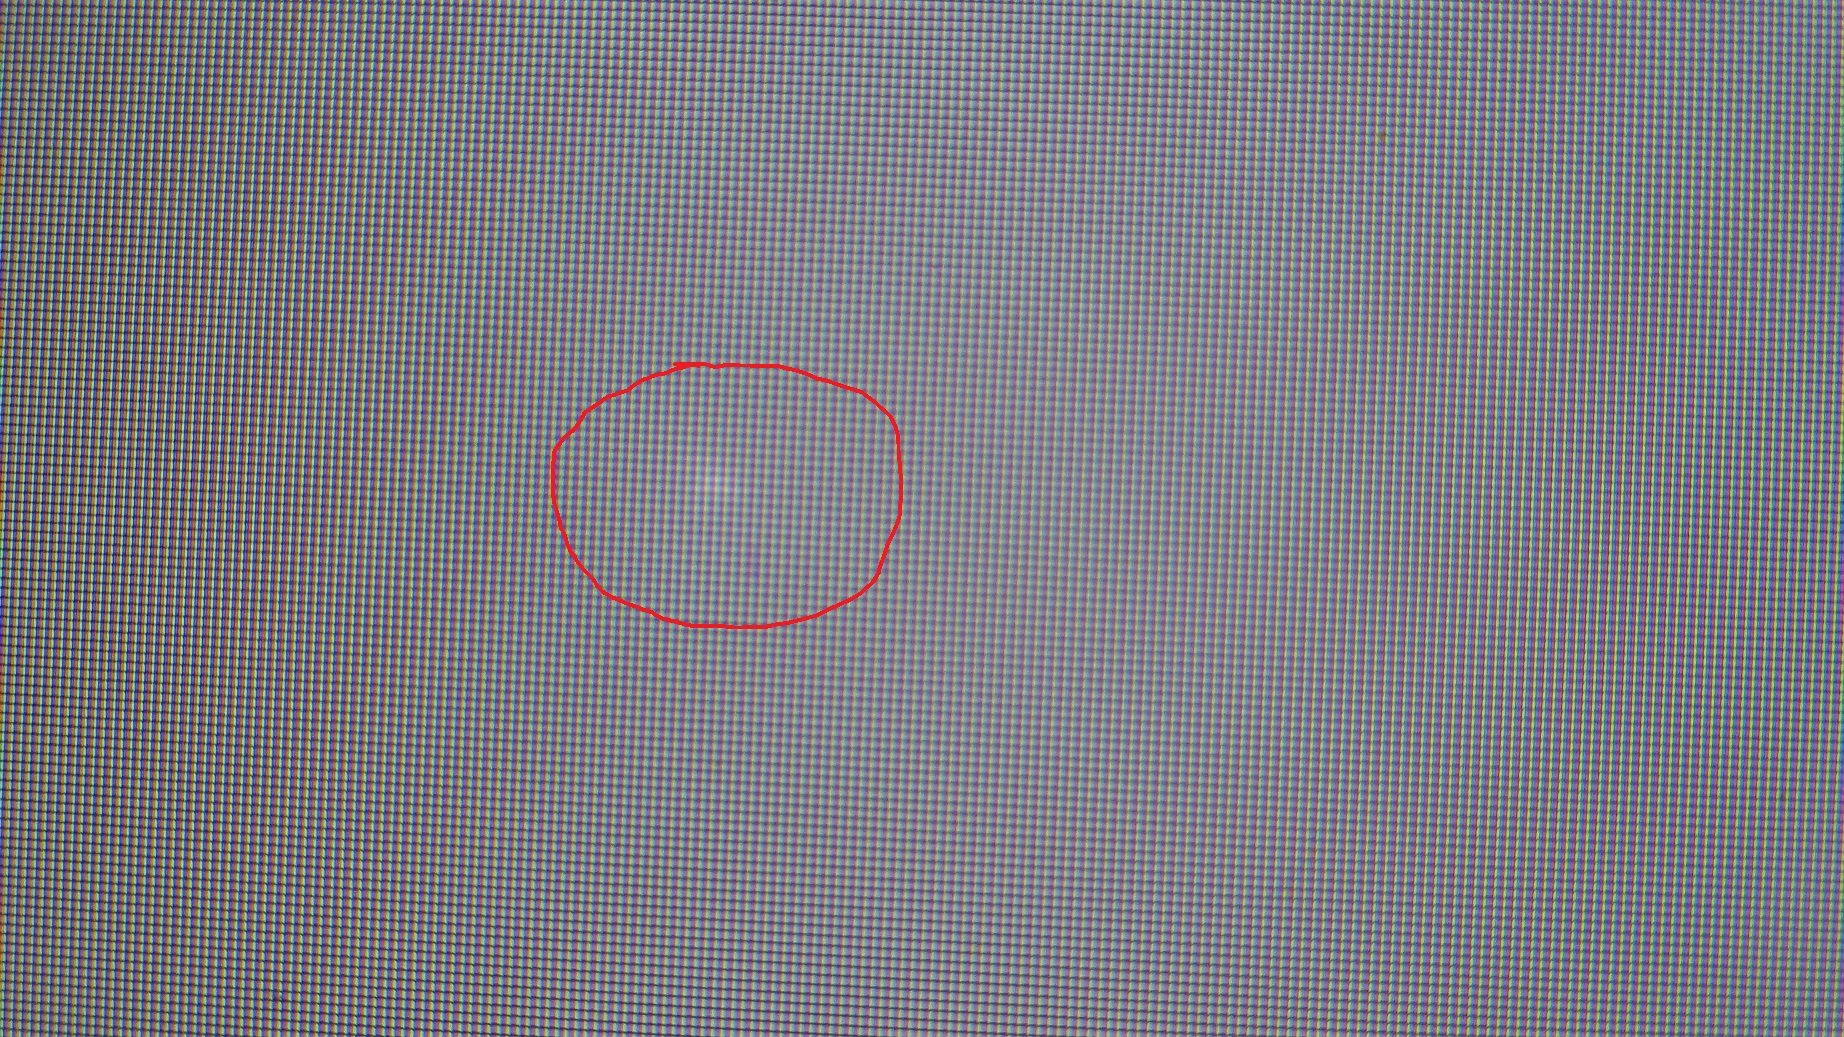 Появилось светлое пятно на экране. Белые точки н амониторн. Белое пятно на экране. Маленькая точка на экране. Темные пиксели на мониторе.